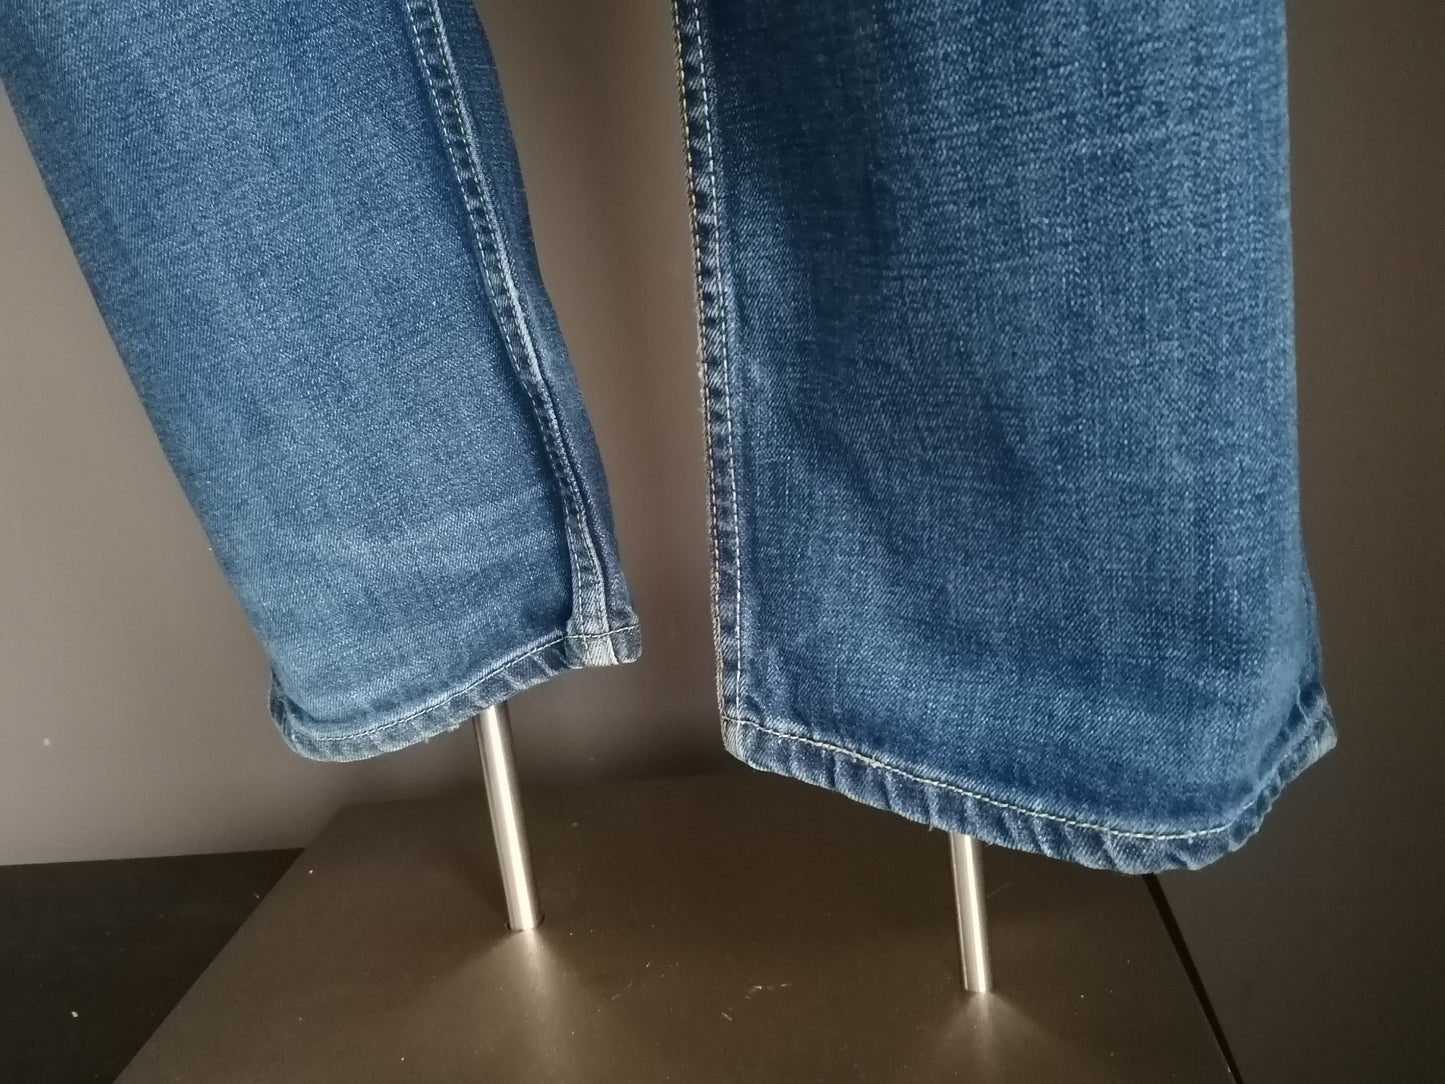 Levi's jeans. Blauw gekleurd. W34 - L28.